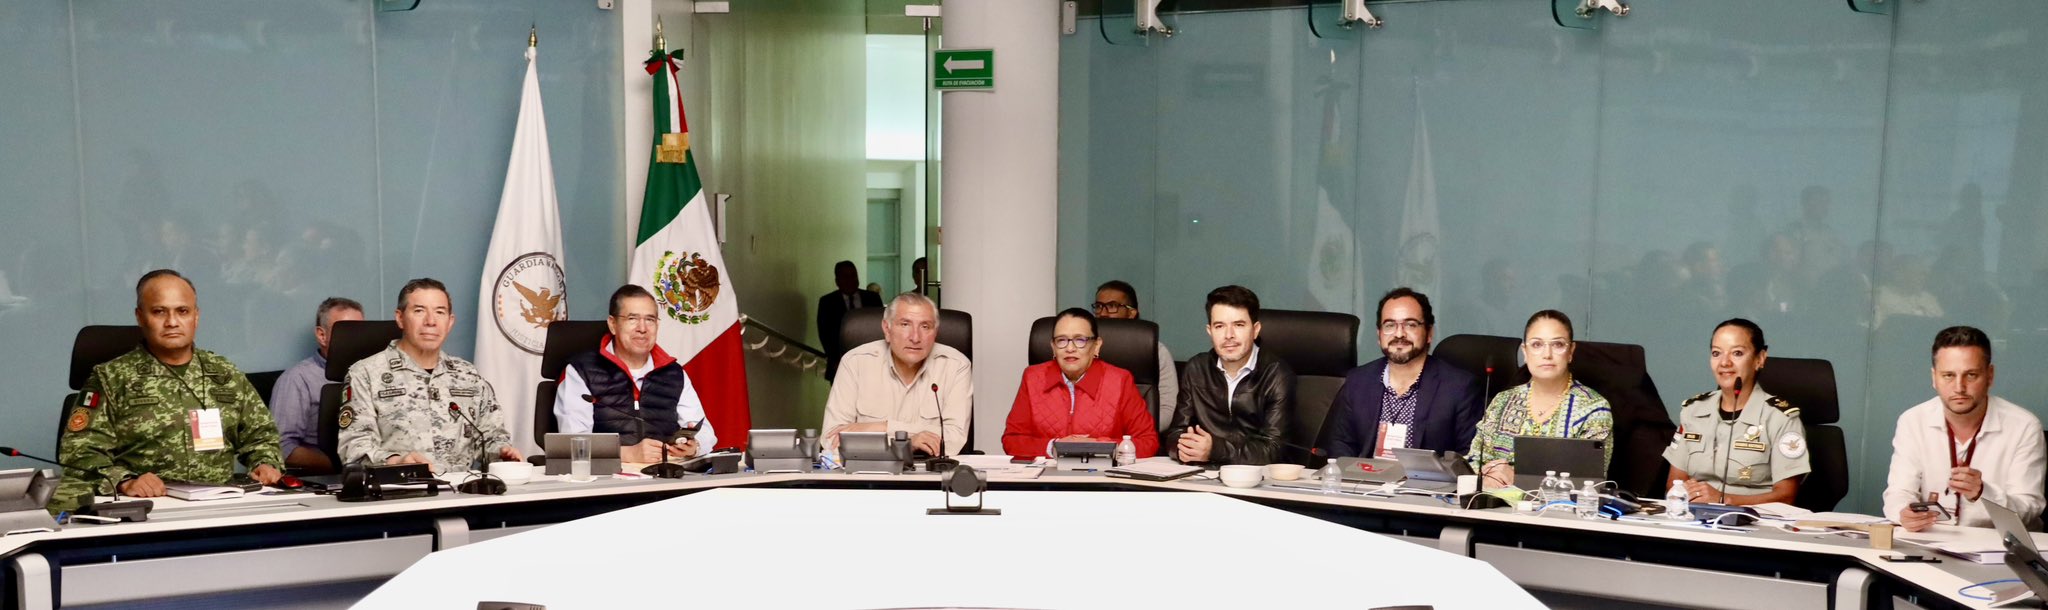 Rosa Icela Rodríguez, informó que se daría "seguimiento puntual del proceso electoral en Coahuila y Edomex